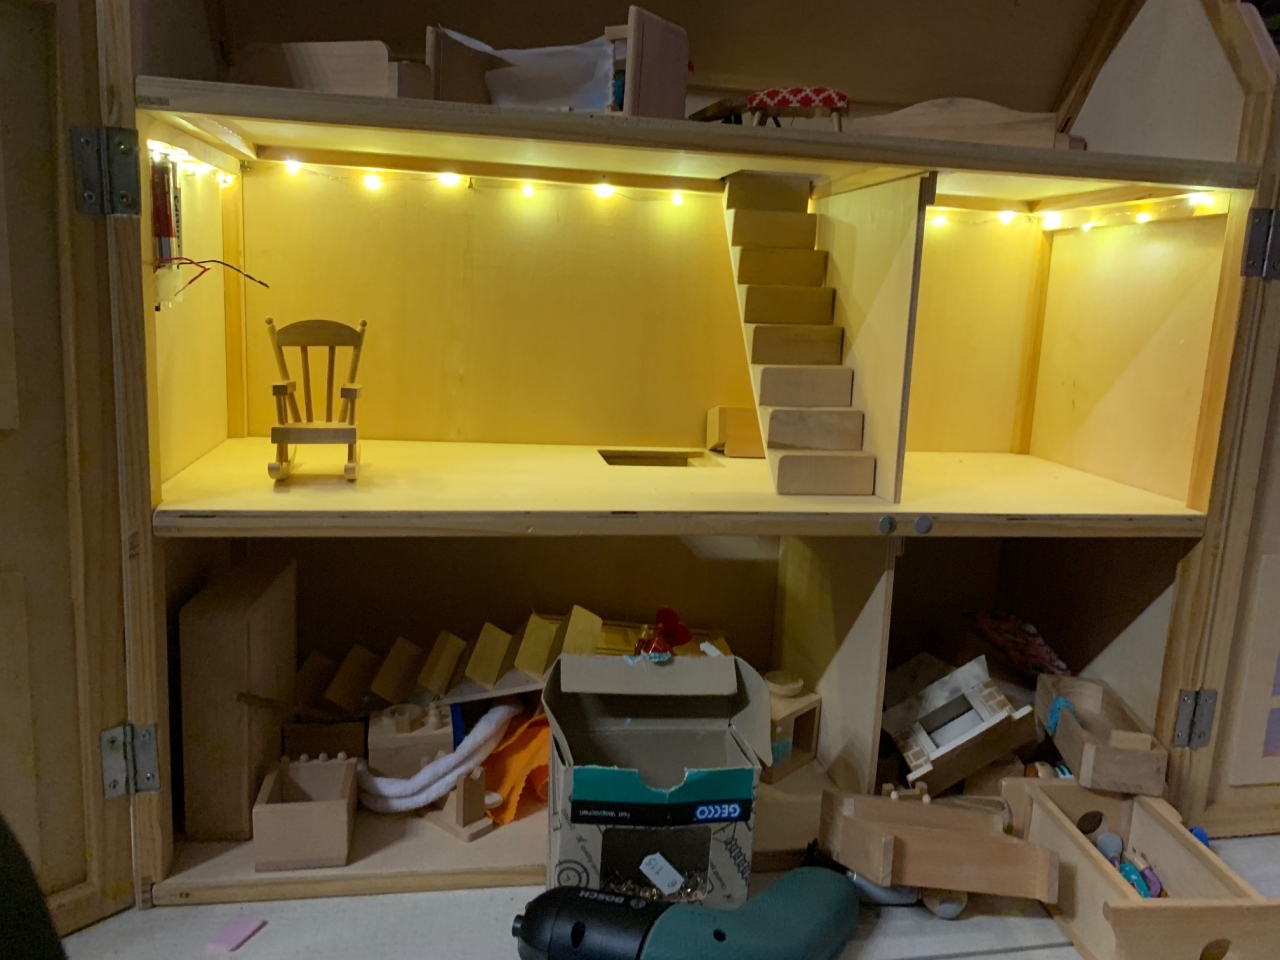 Beleuchtung für das Puppenhaus - Bauanleitung zum Selberbauen -   - Deine Heimwerker Community